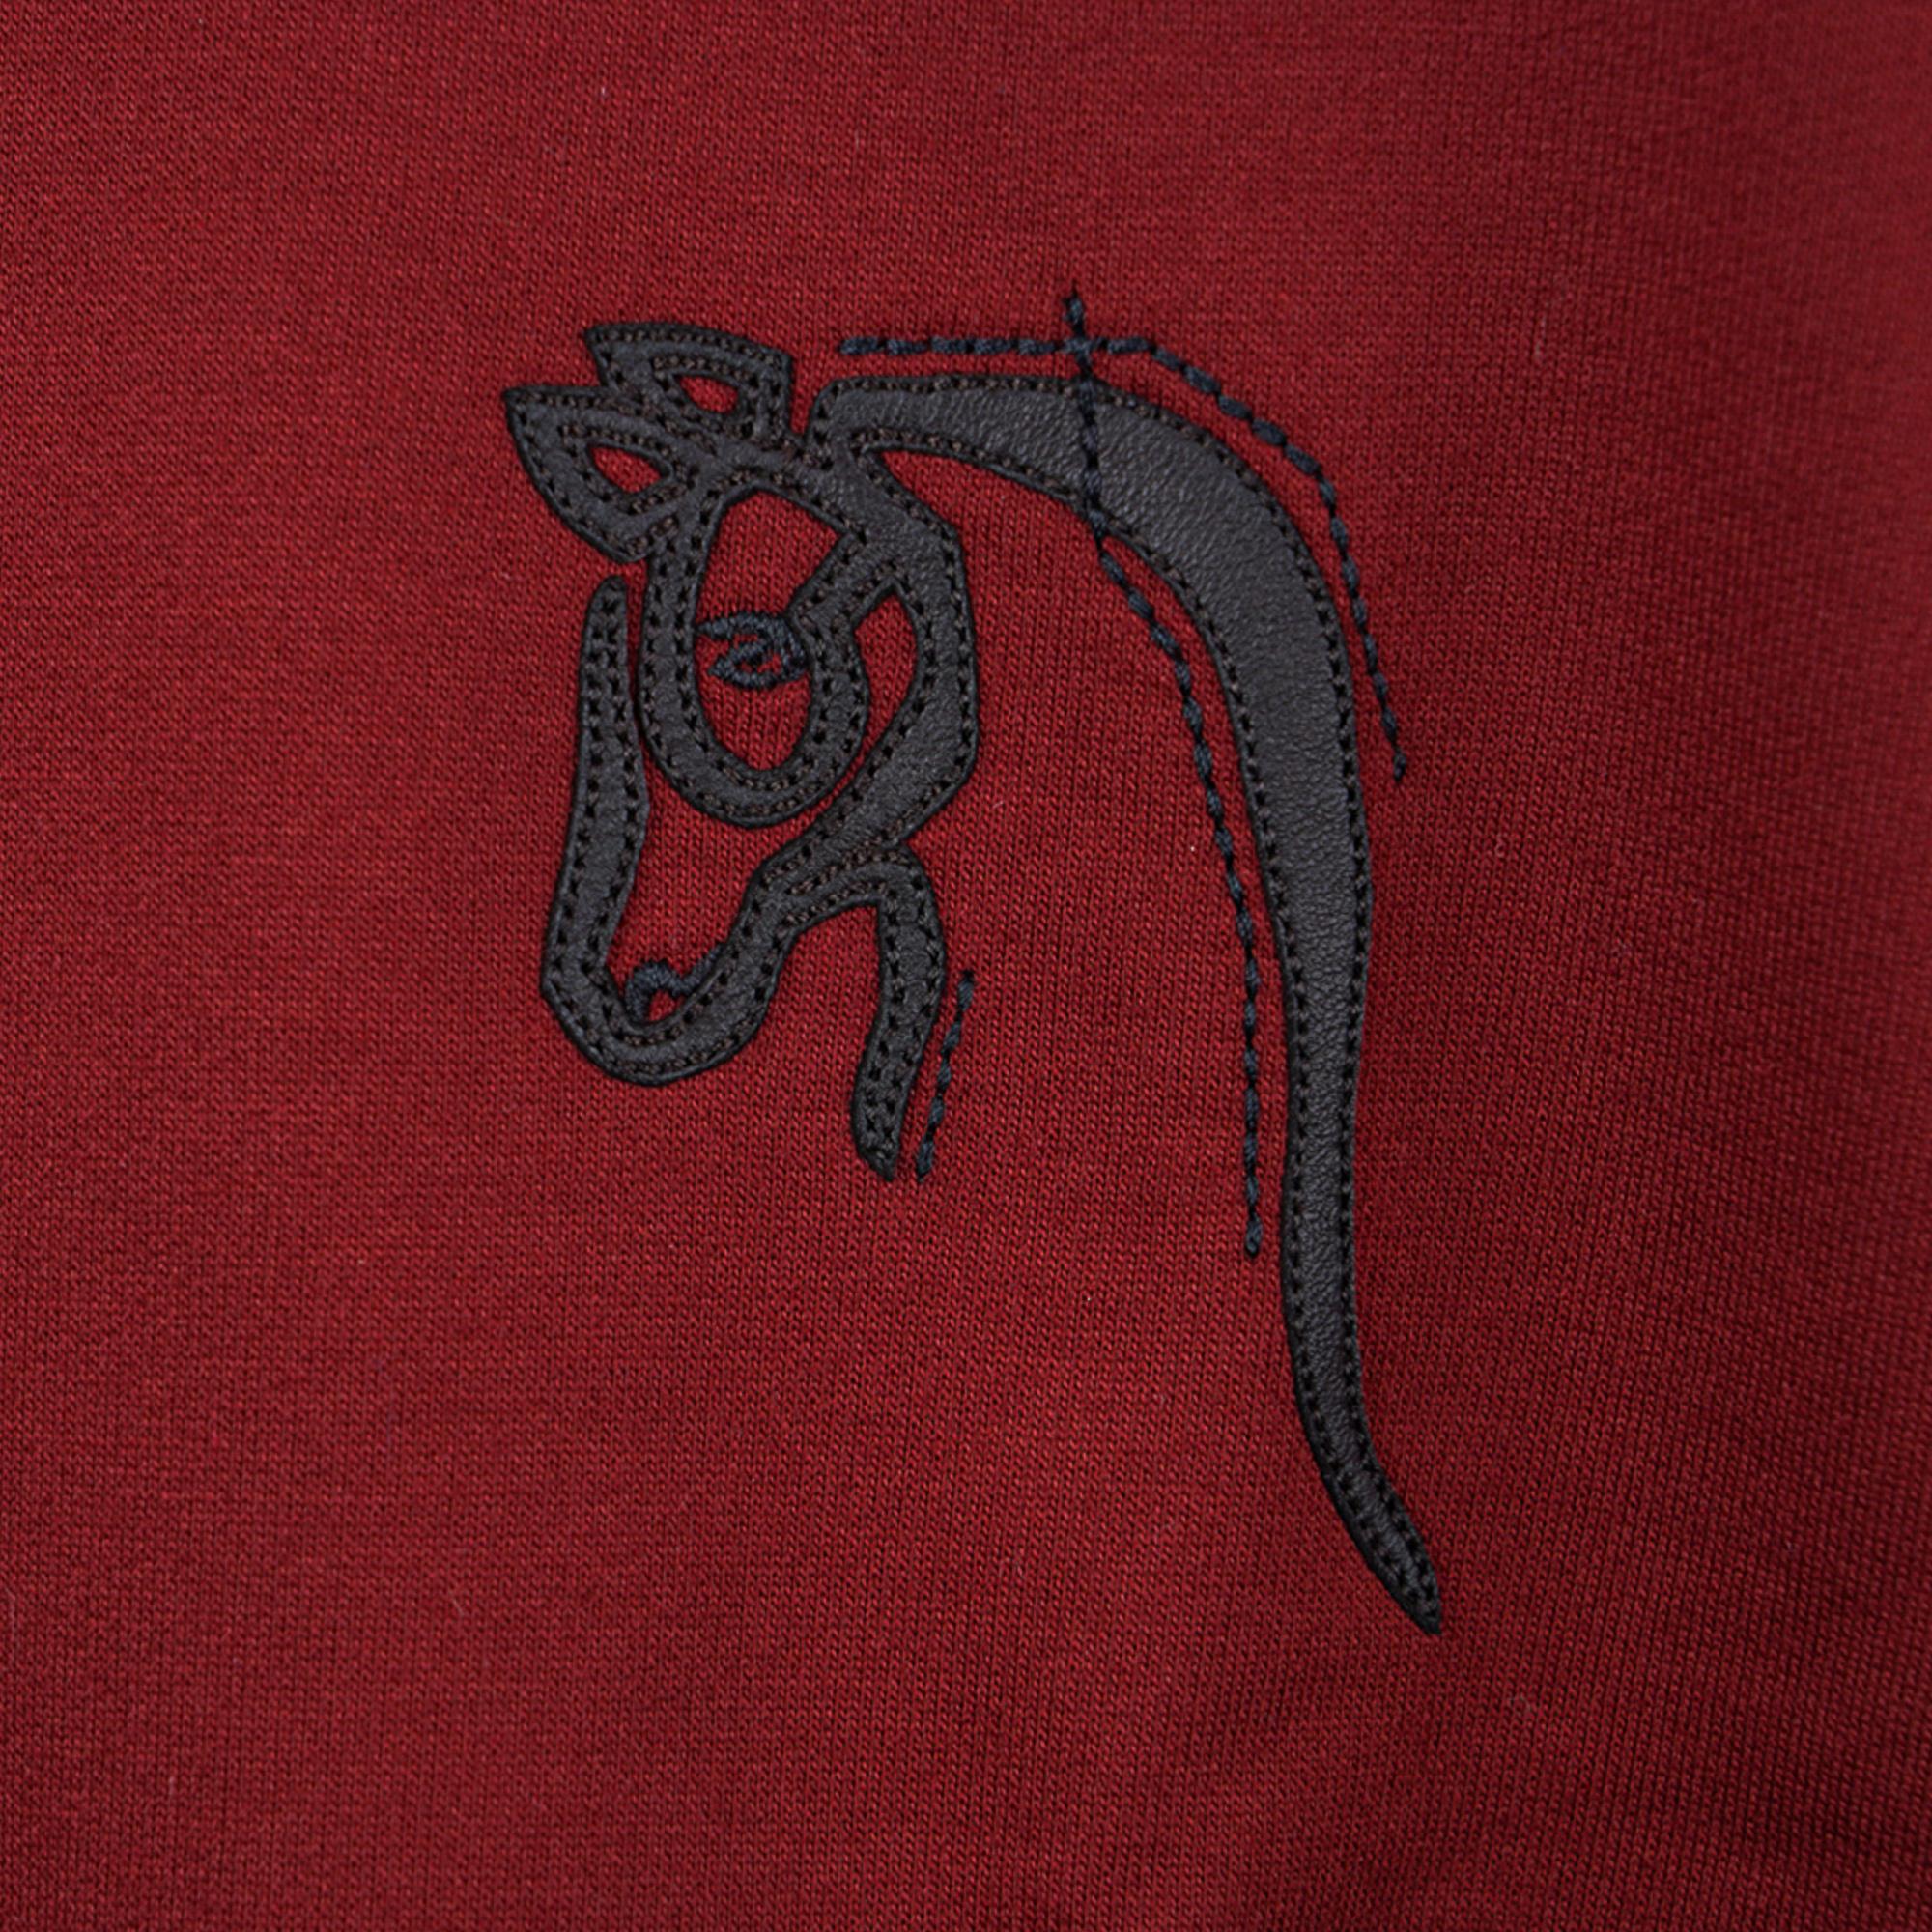 Mightychic bietet ein Hermes Mini Patch Cuir T-Shirt in der Farbe Rouge H an.
Dargestellt ist ein Cheval au trait, ein Zugpferd, in Lammfell.
Kurzarm-T mit Rundhalsausschnitt.
Der Stoff ist aus Baumwolle.
NEU oder NIE GEBRAUCHT
Endverkauf

GRÖSSE